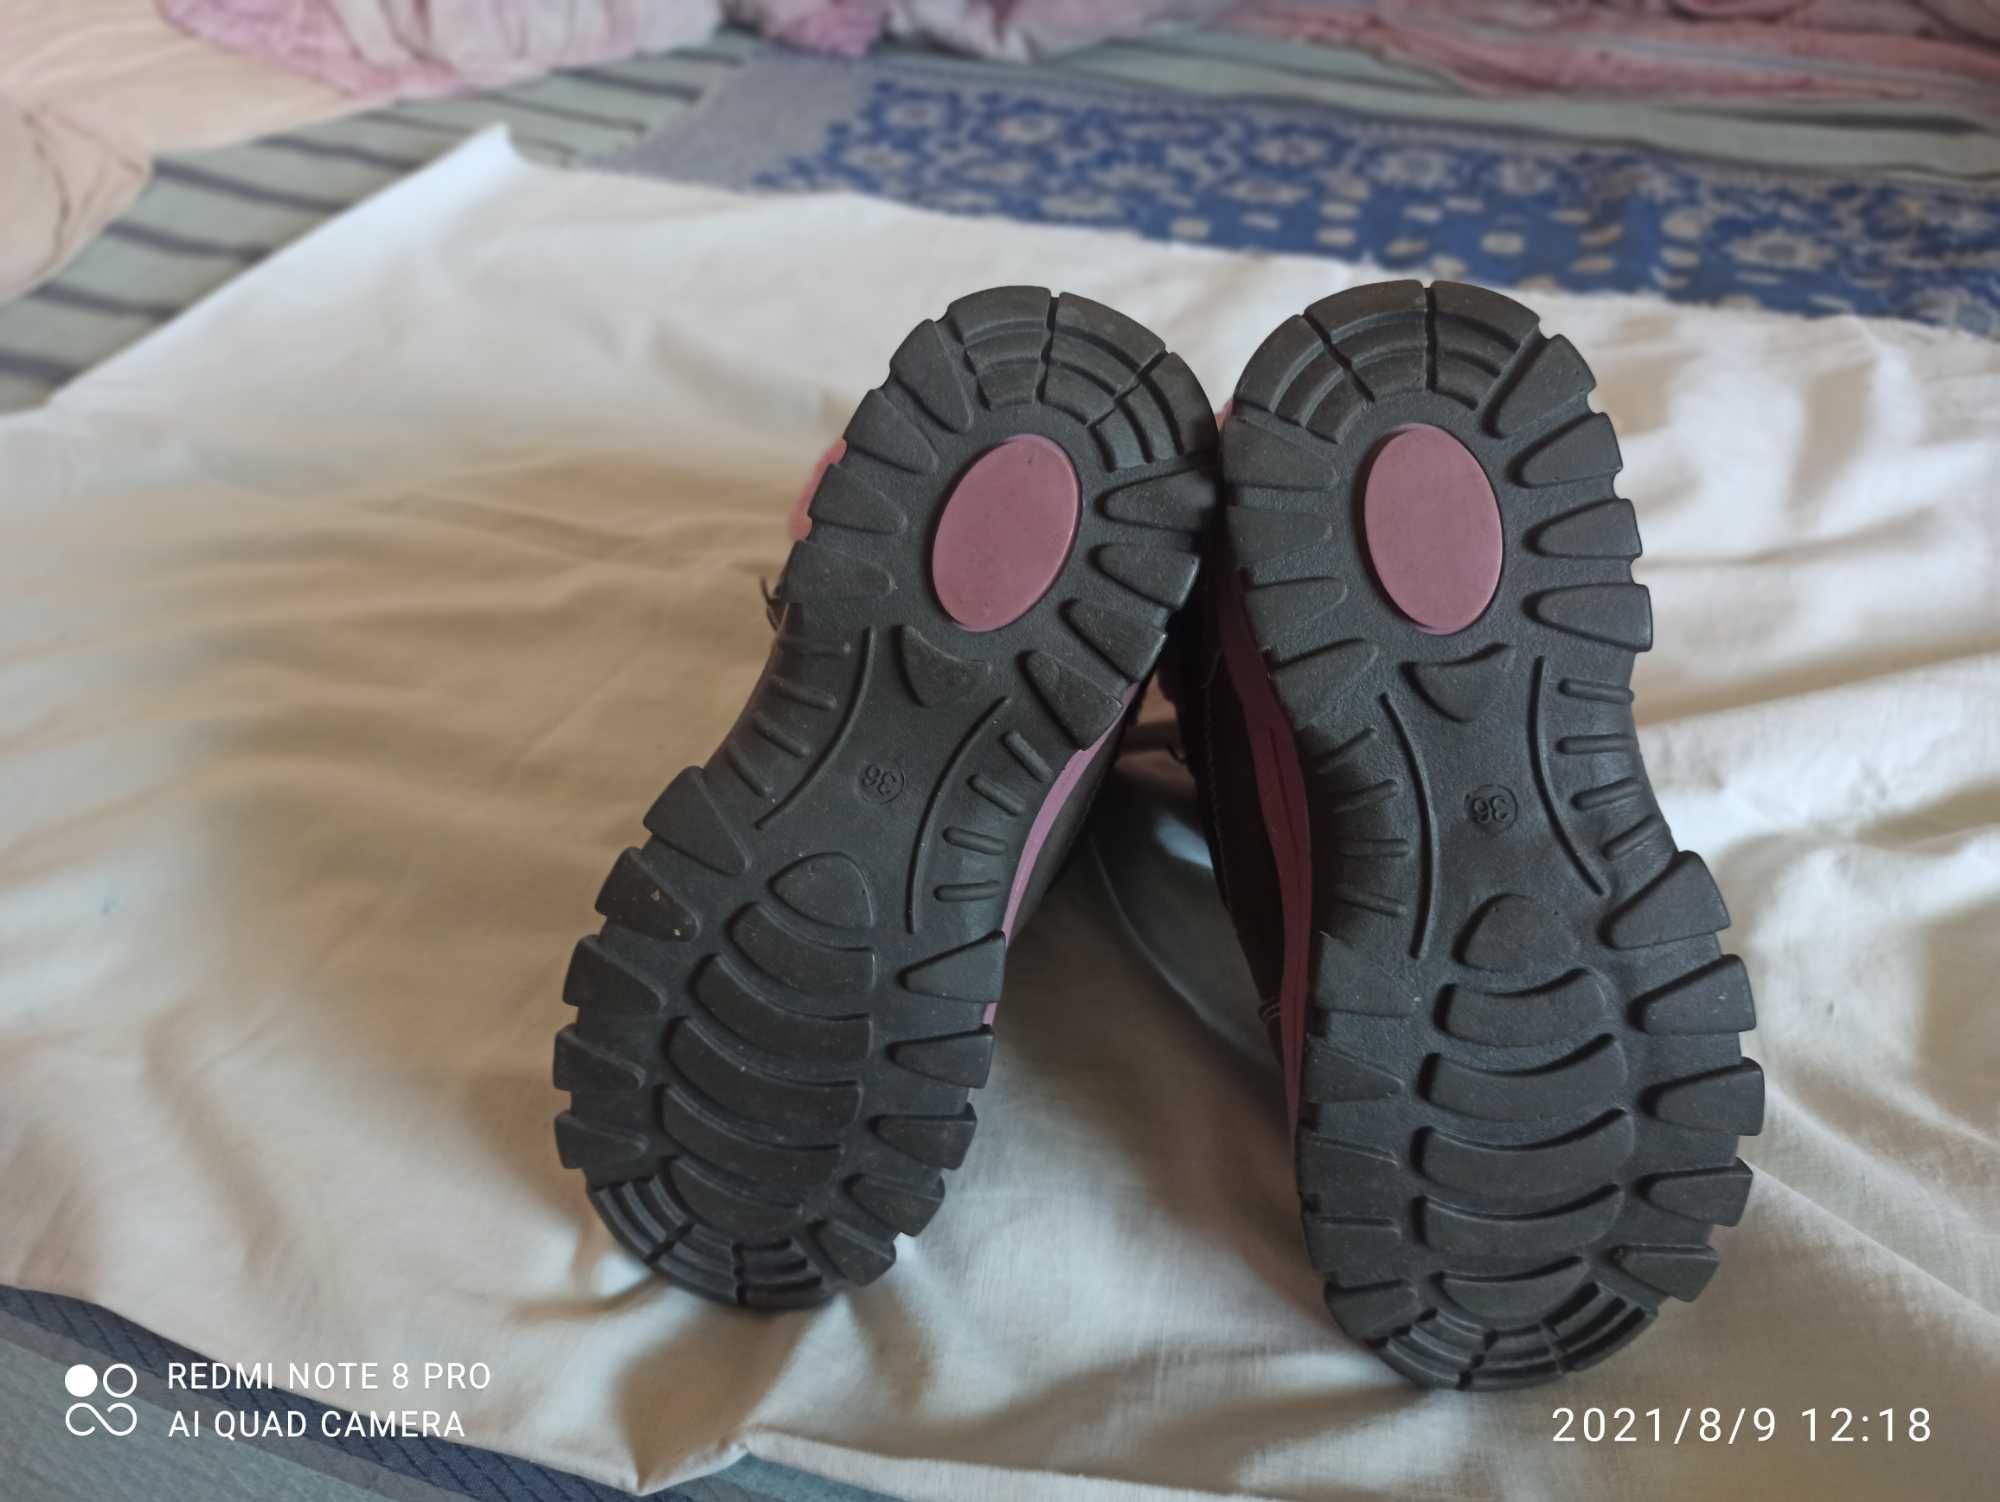 продам детские теплые сапоги и ботинки